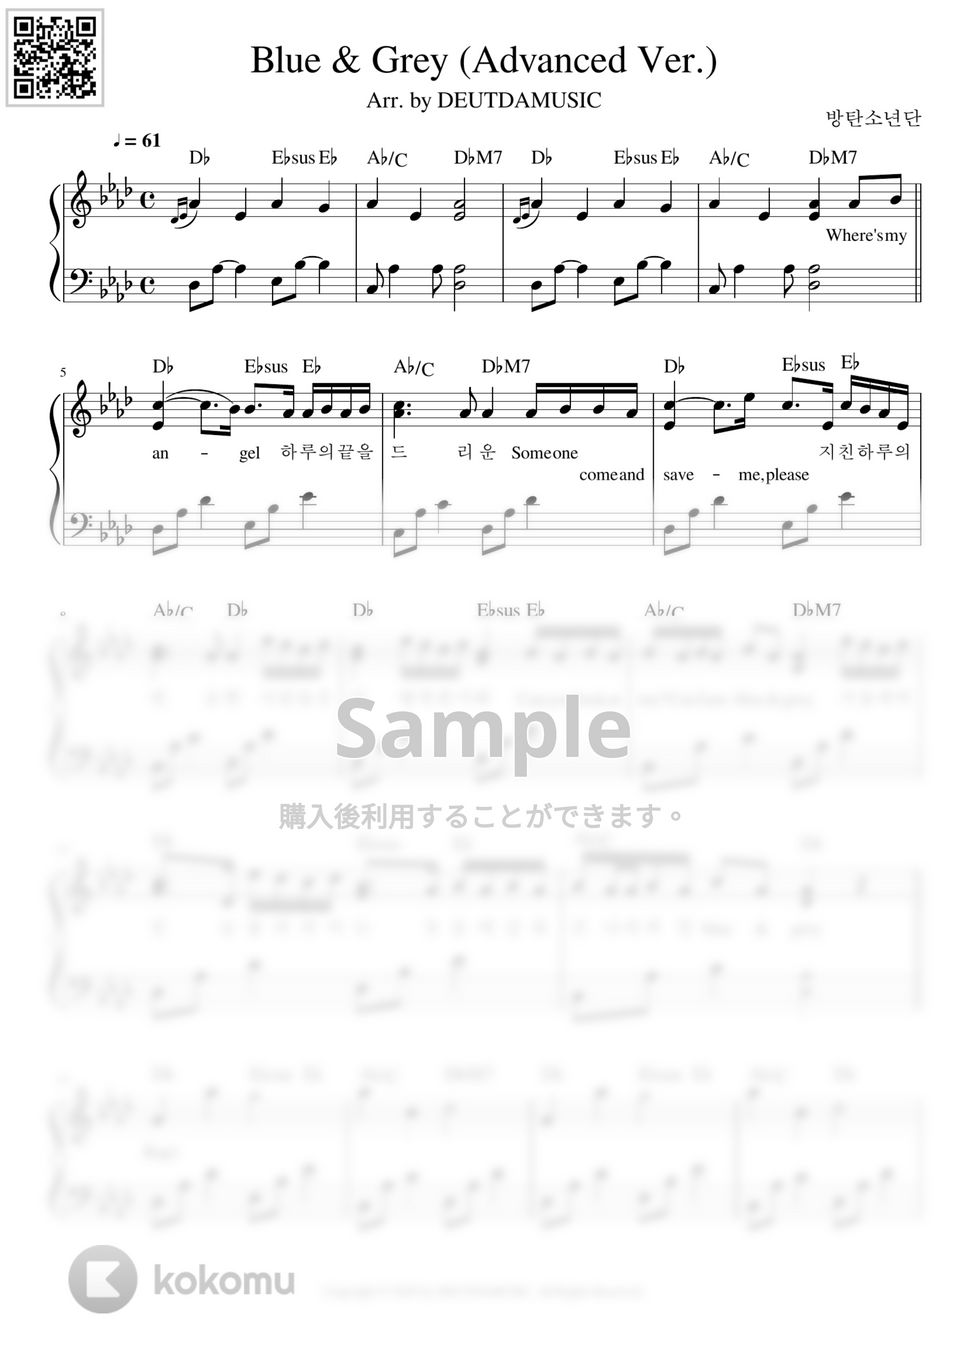 防弾少年団(BTS) - Blue & Grey (中級バージョン) by DEUTDAMUSIC